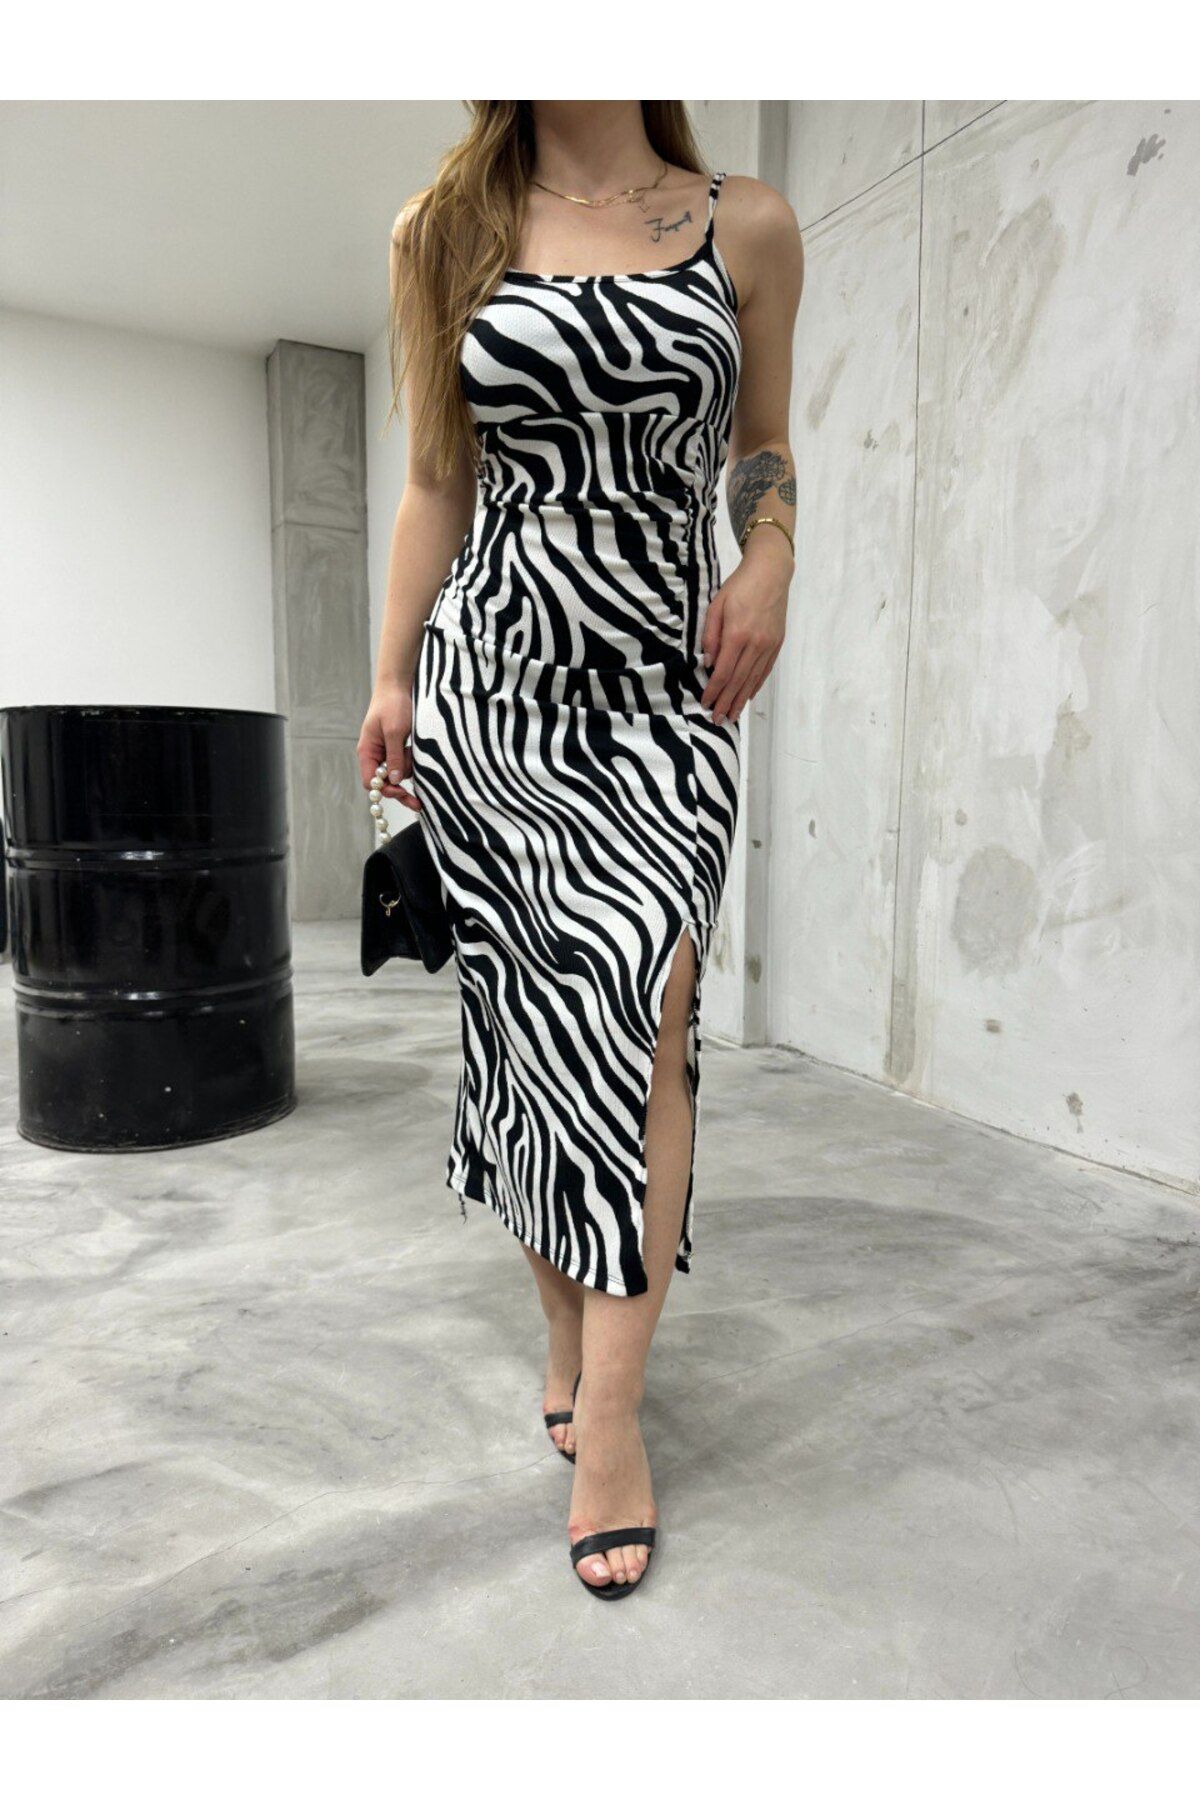 BİKELİFE Kadın Zebra Desenli İp Askı Yırtmaçlı Elbise